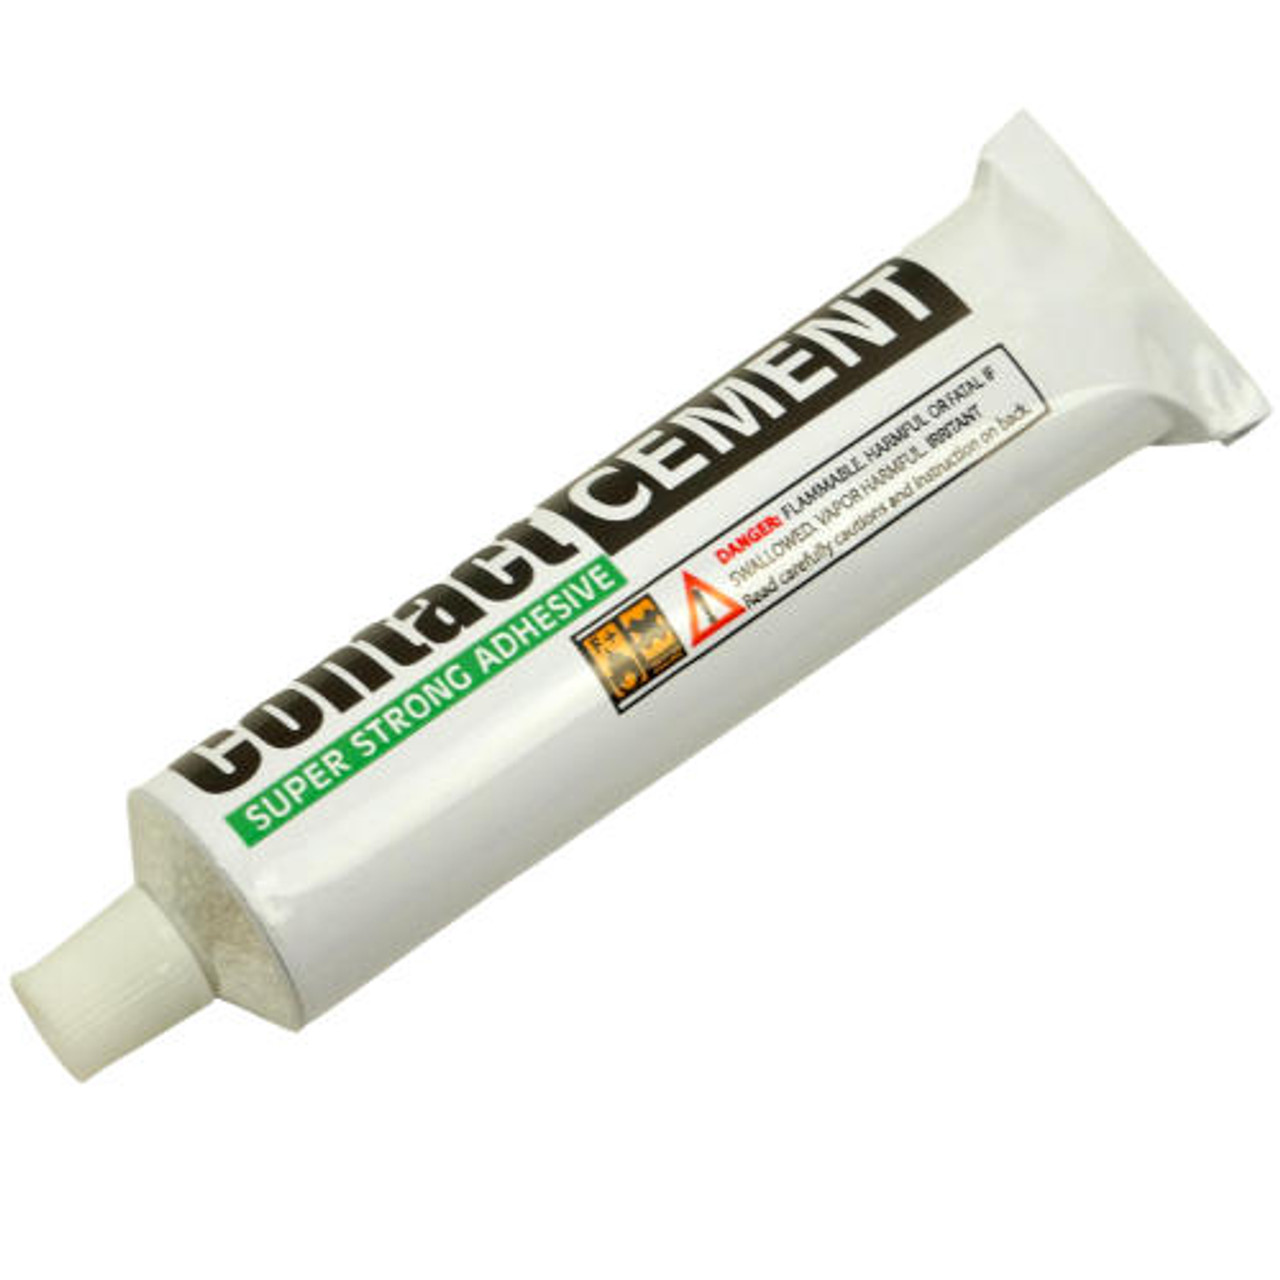 Dural Dura Safe Contact Cement Glue Adhesive Quart Gallon 